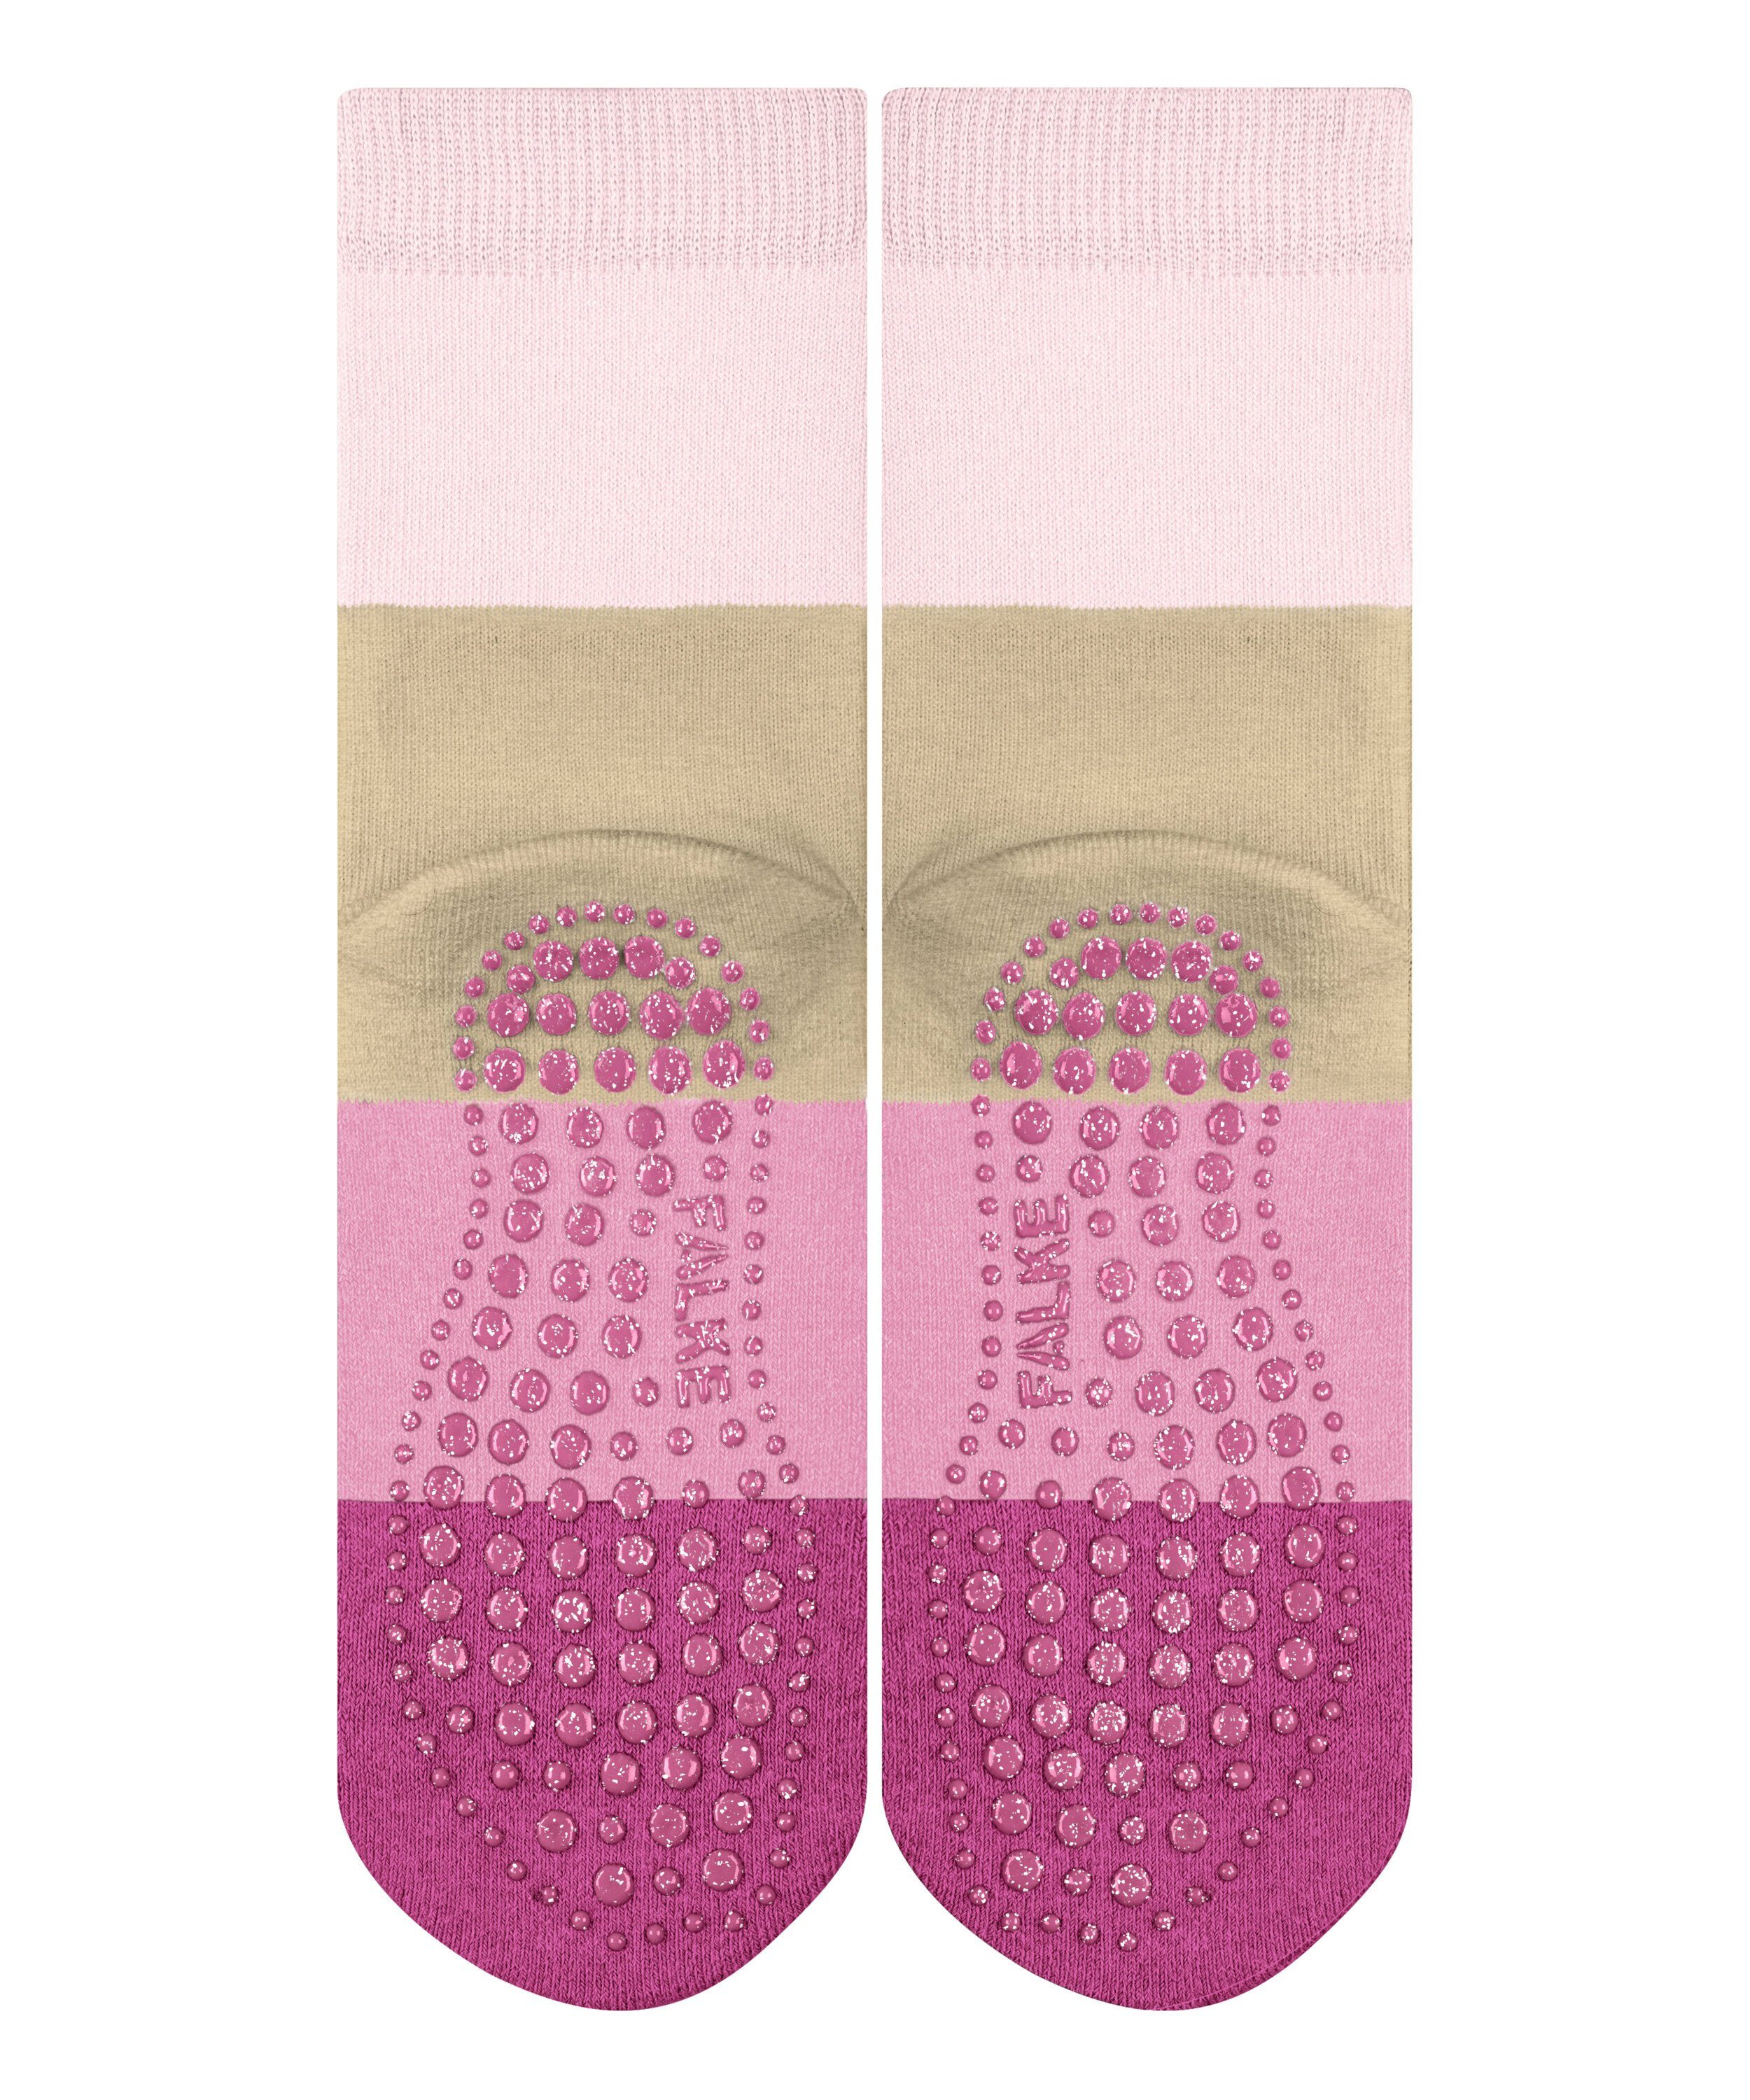 FALKE Socken Summer (8902) rose powder (1-Paar)